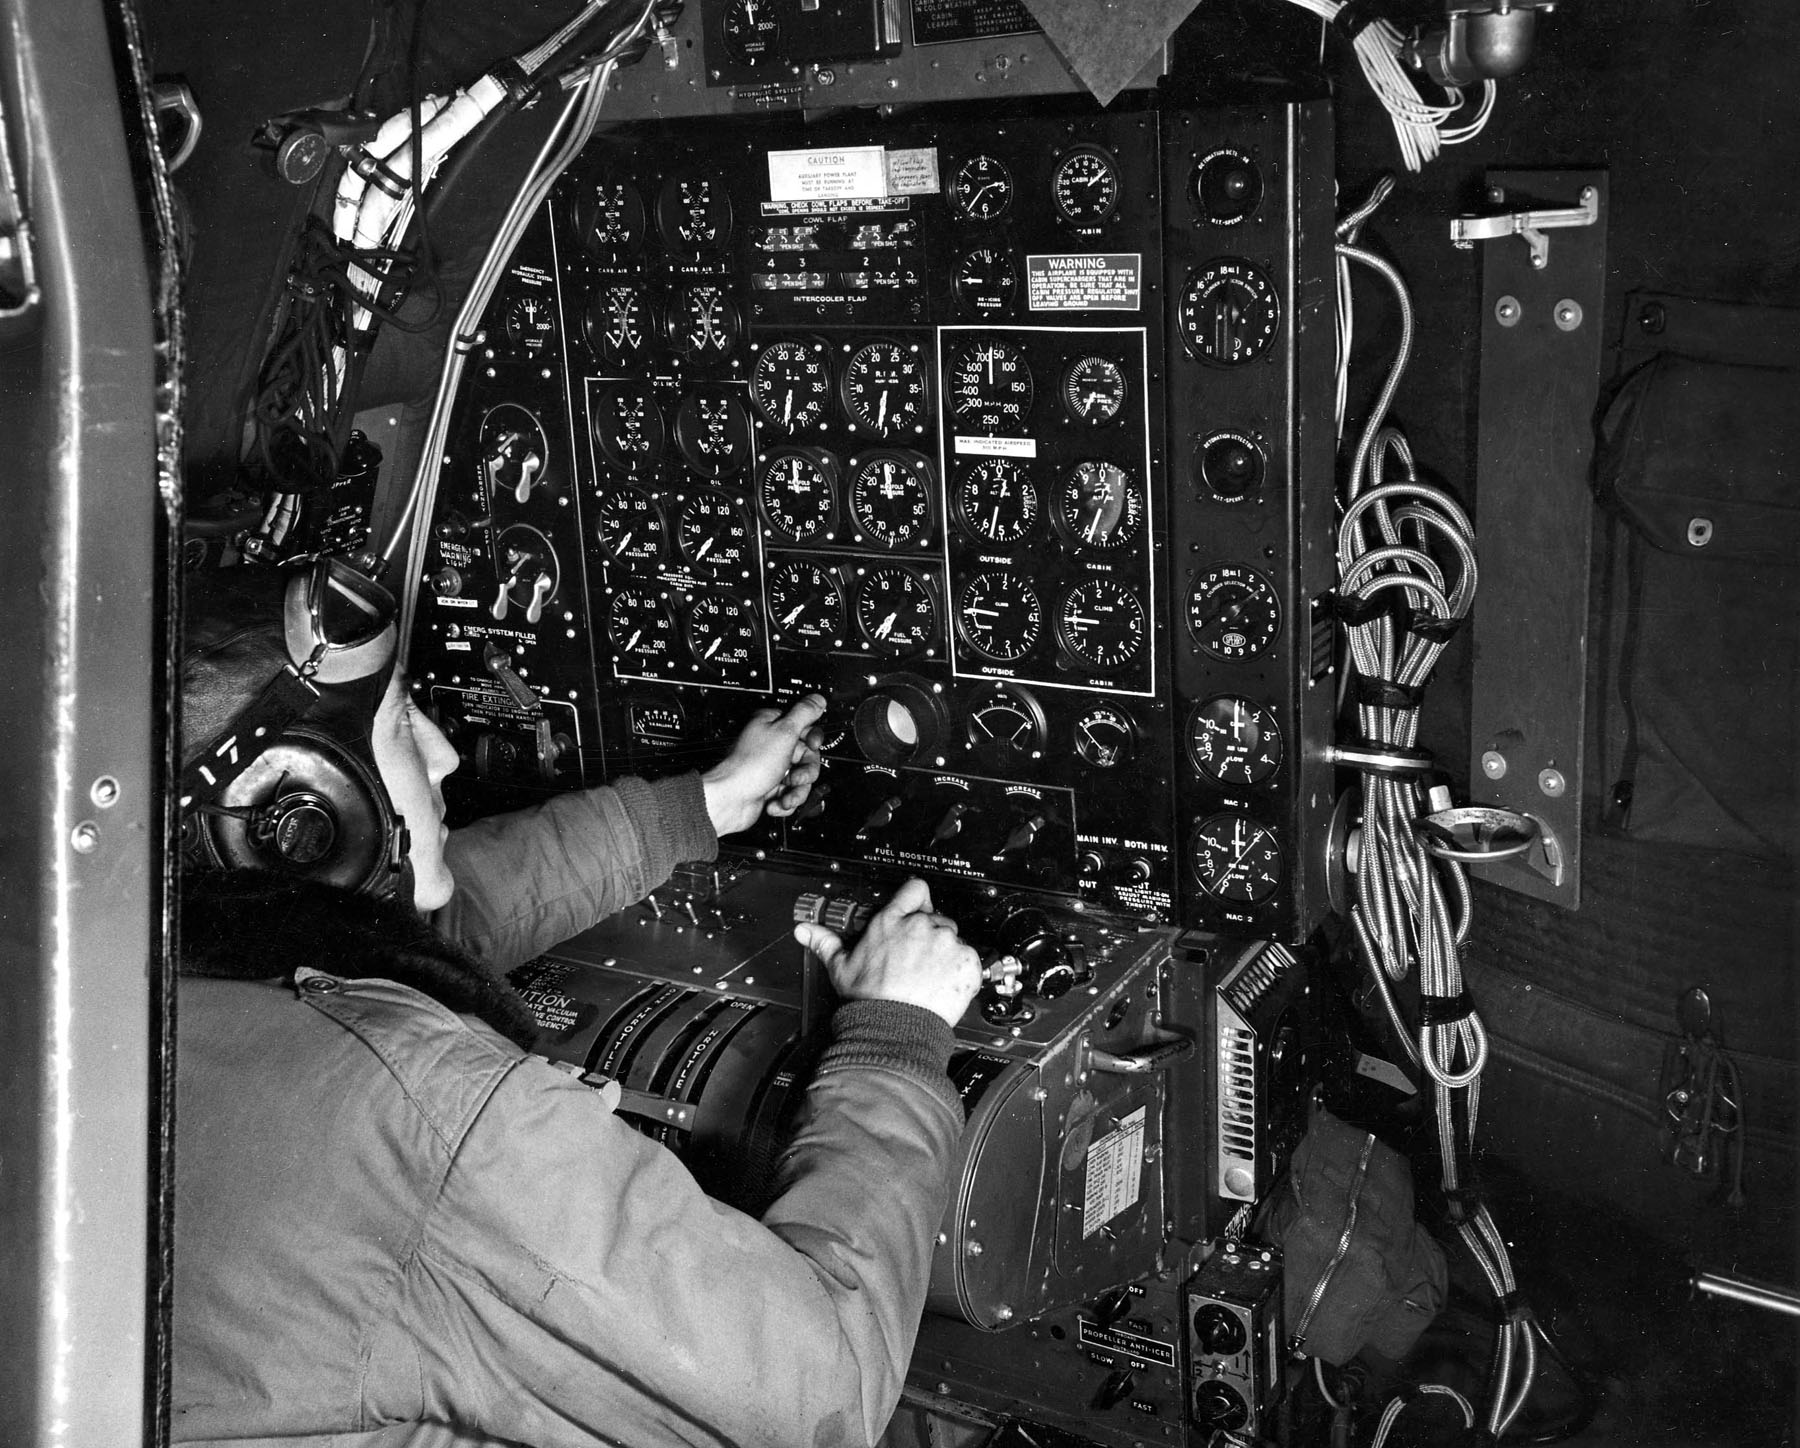 Boeing_B-29_flight_engineer_s_panel